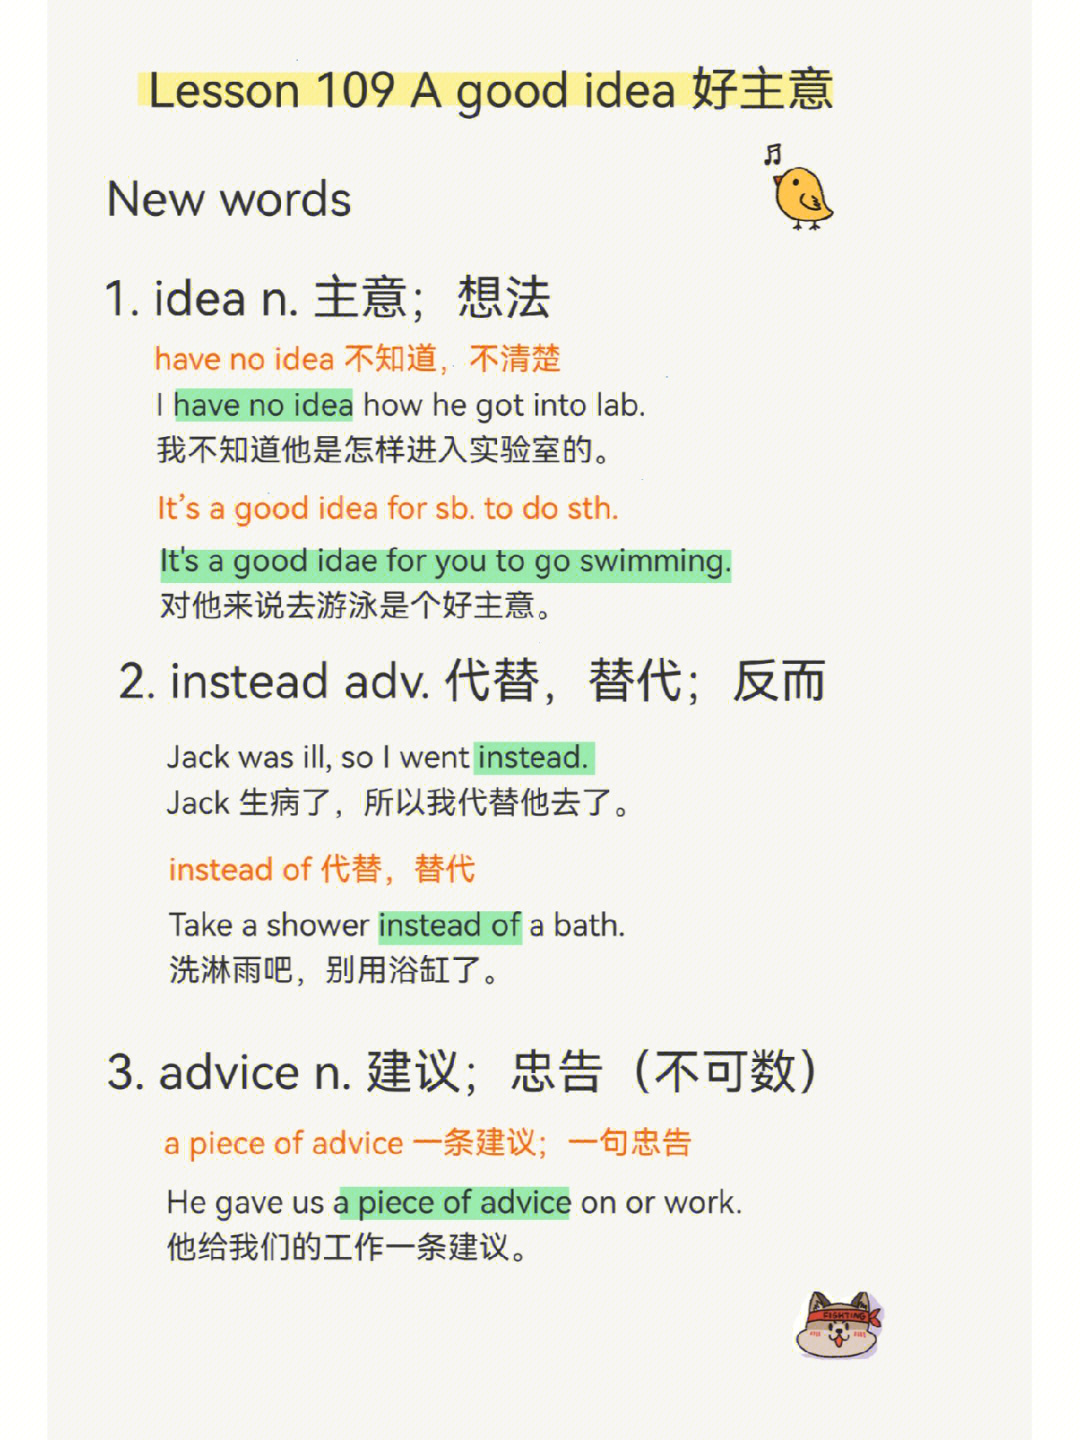 【新概念一】lesson 109 a good idea 一个好主意适合小学生学习,单词